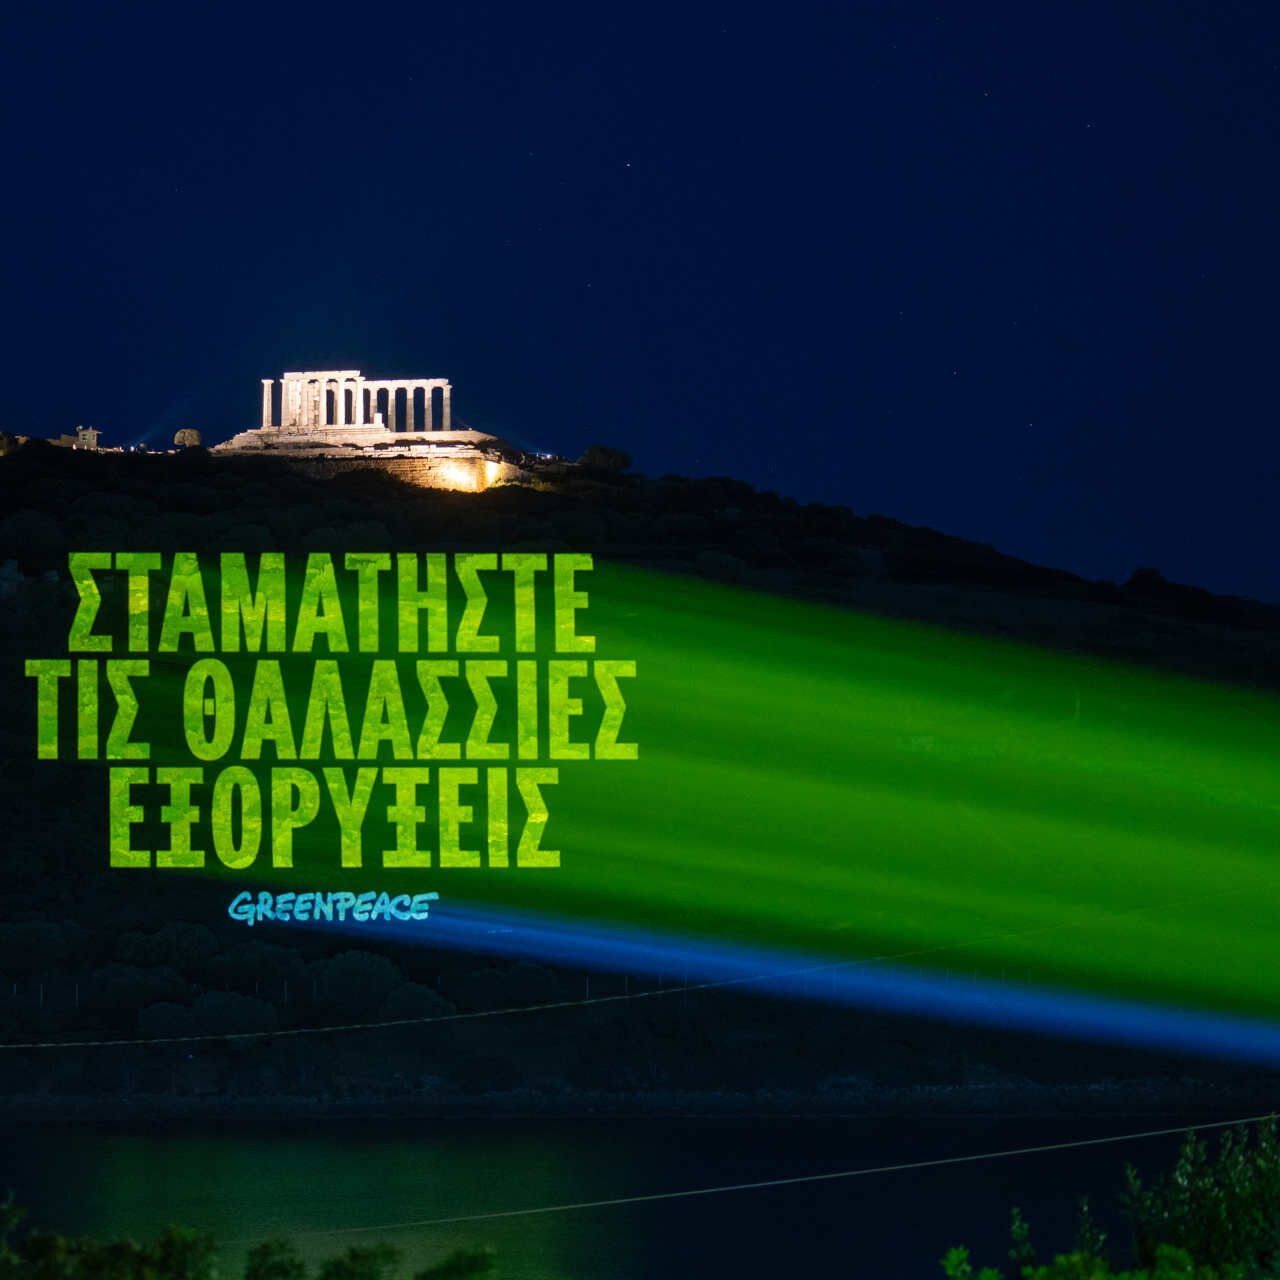 Řecko: zpráva v řečtině, která zní